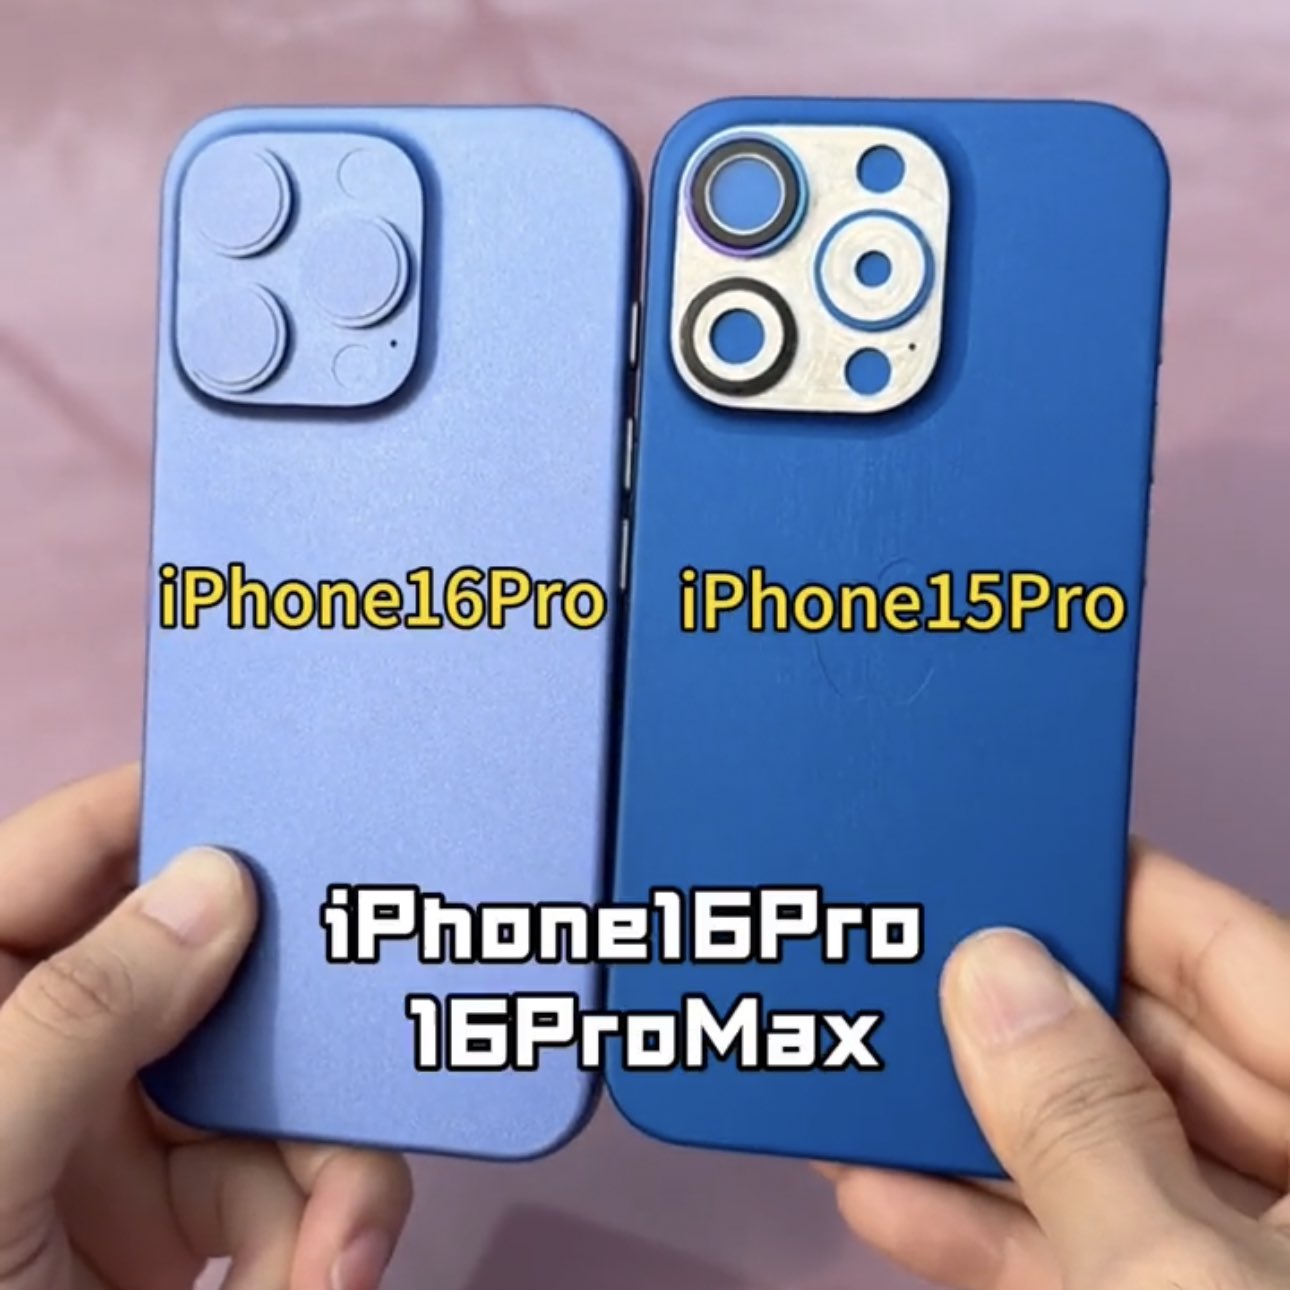 iphone-16-pro-v-iphone-15-pro.jpeg